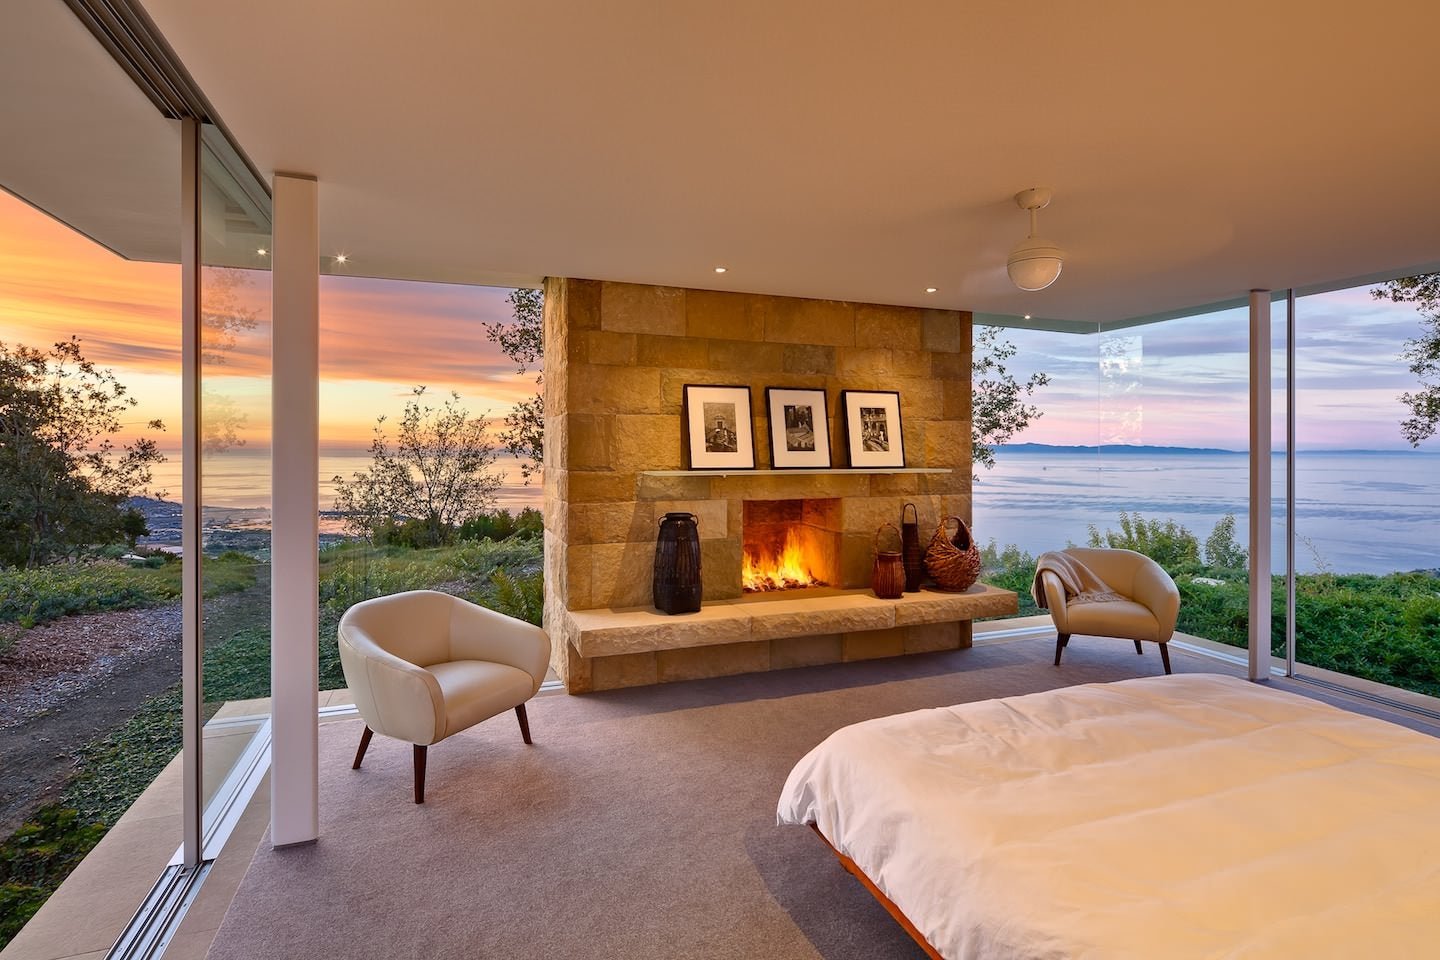 Уютная спальня с камином и панорамными окнами